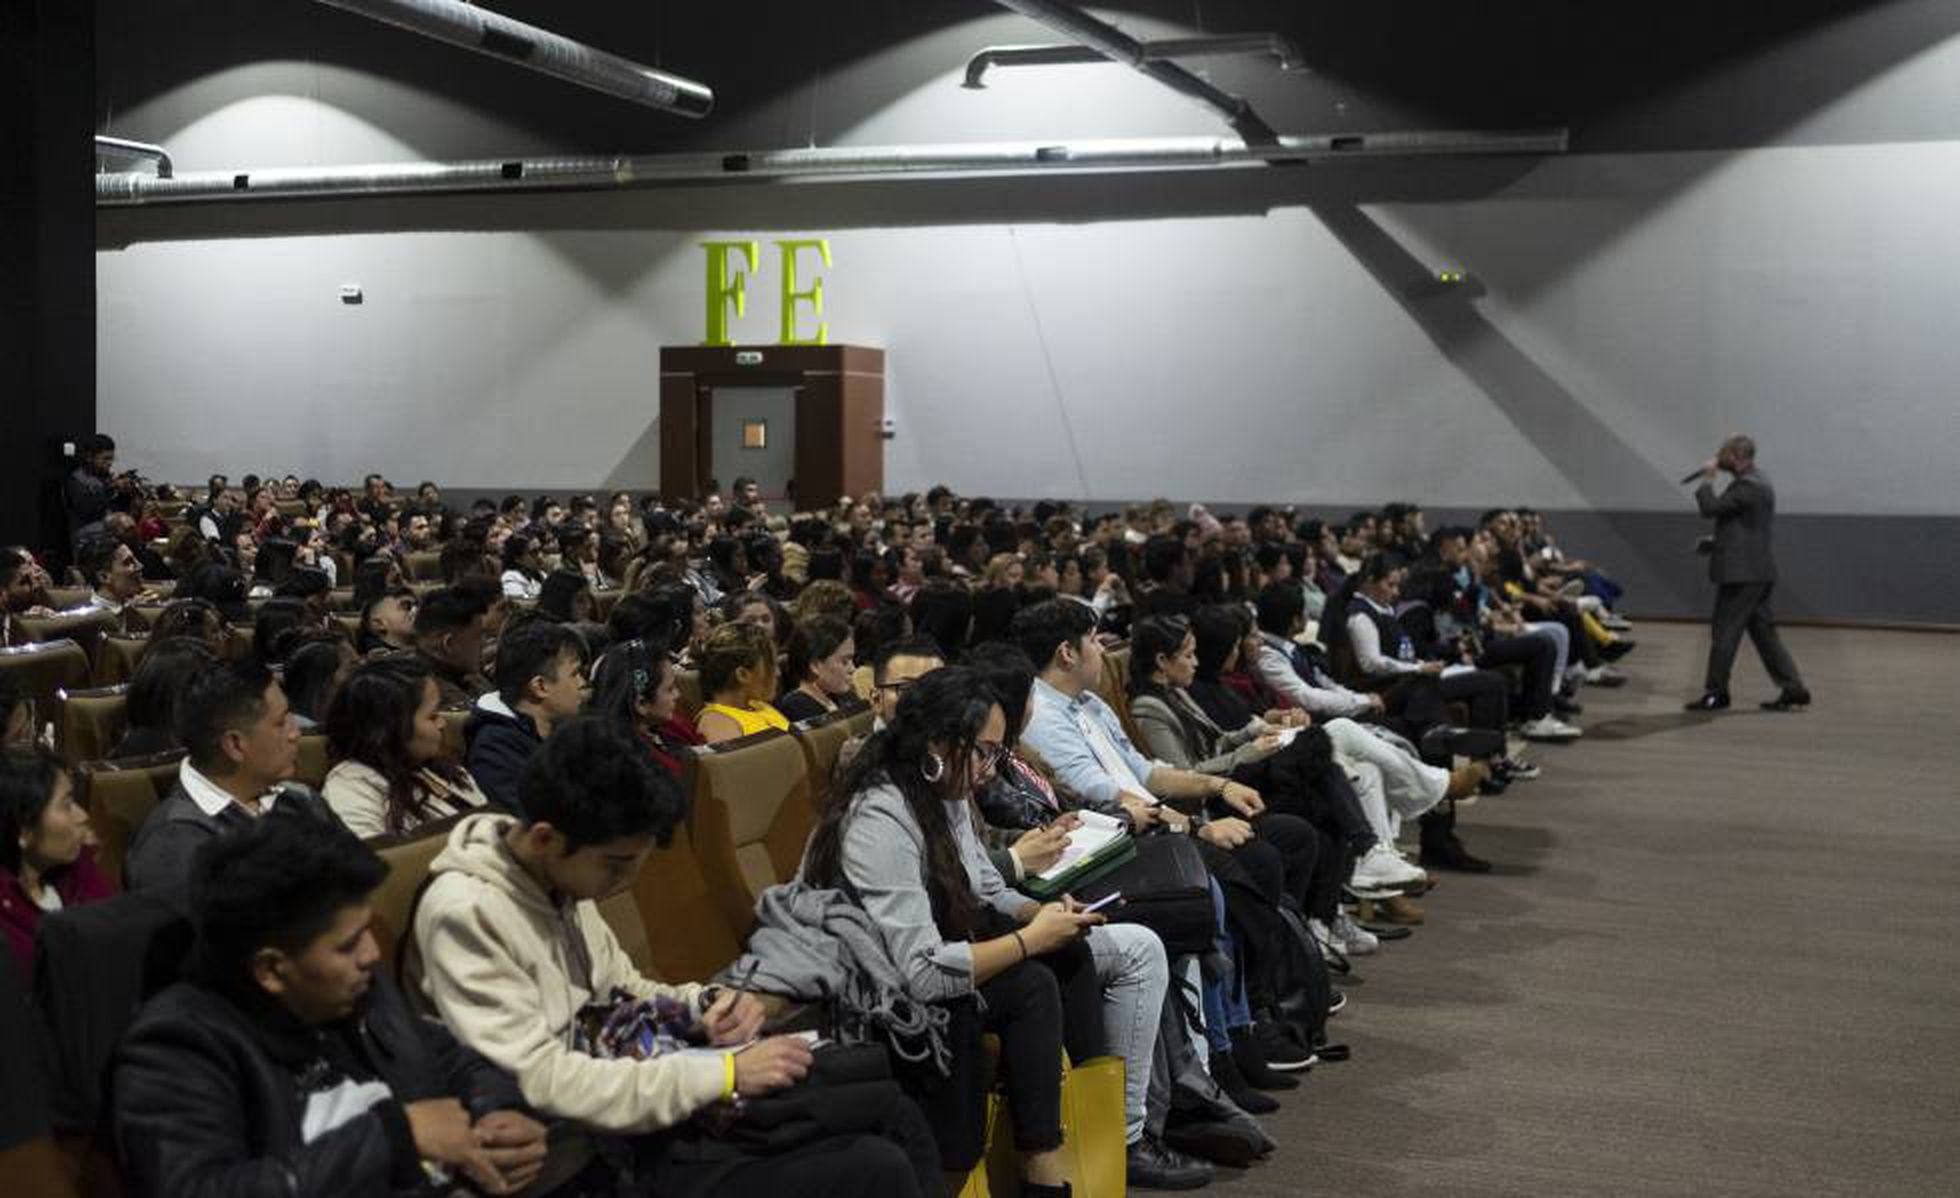 Los evangélicos conquistan el polígono: 17 iglesias en dos calles | Madrid  | EL PAÍS